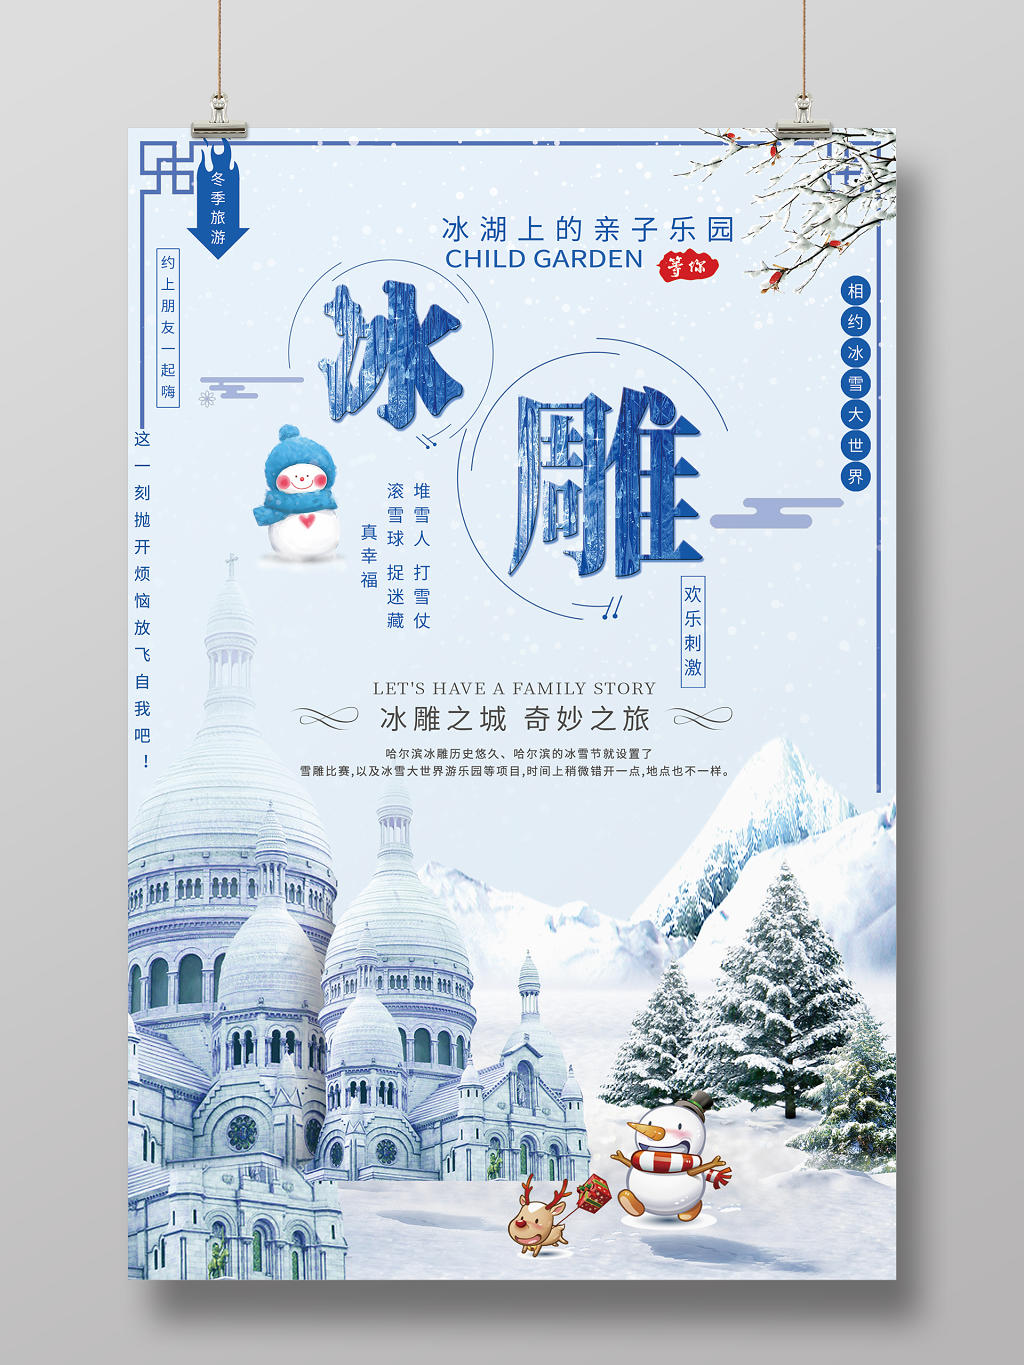 冰雕冬天冬季旅游亲子乐园欢乐刺激宣传海报设计